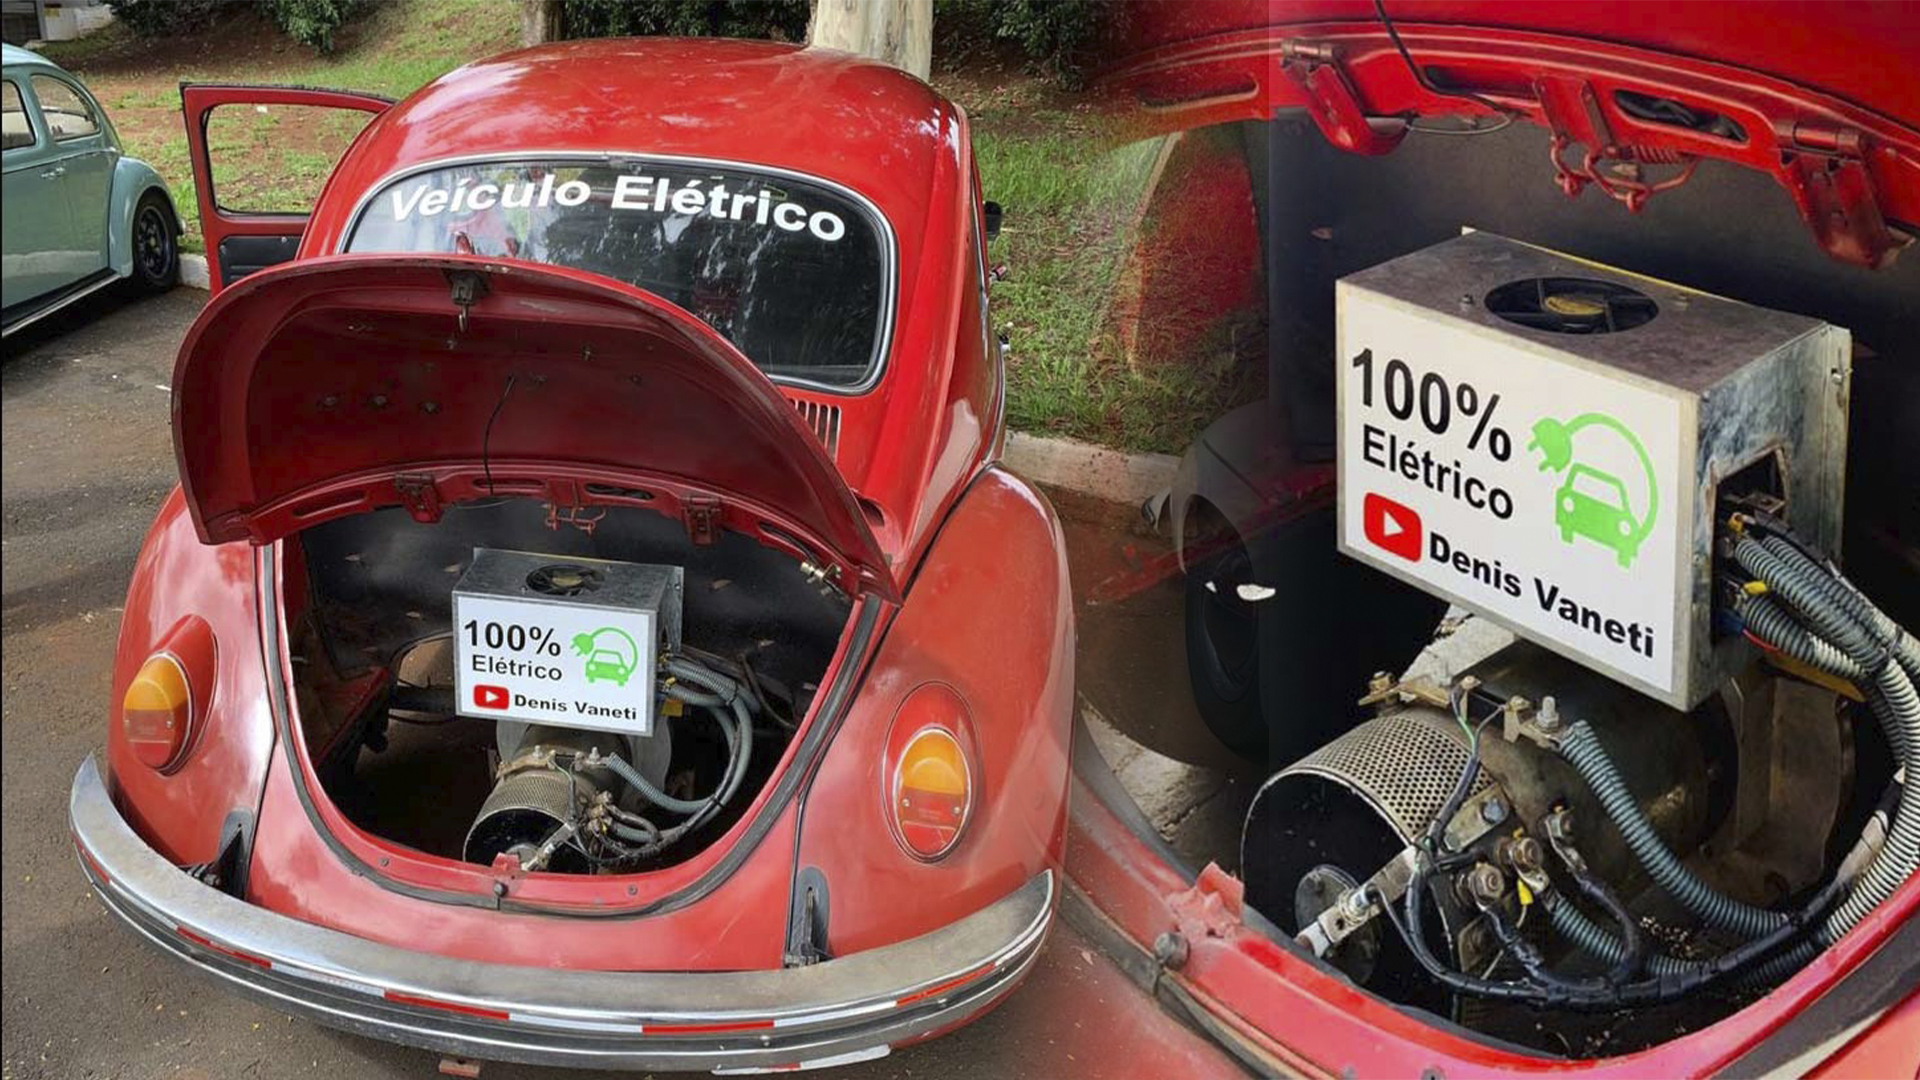 Engenheiro brasileiro transforma Fusca antigo em um Carro 100% Elétrico gastando pouco mais de R$ 13 mil